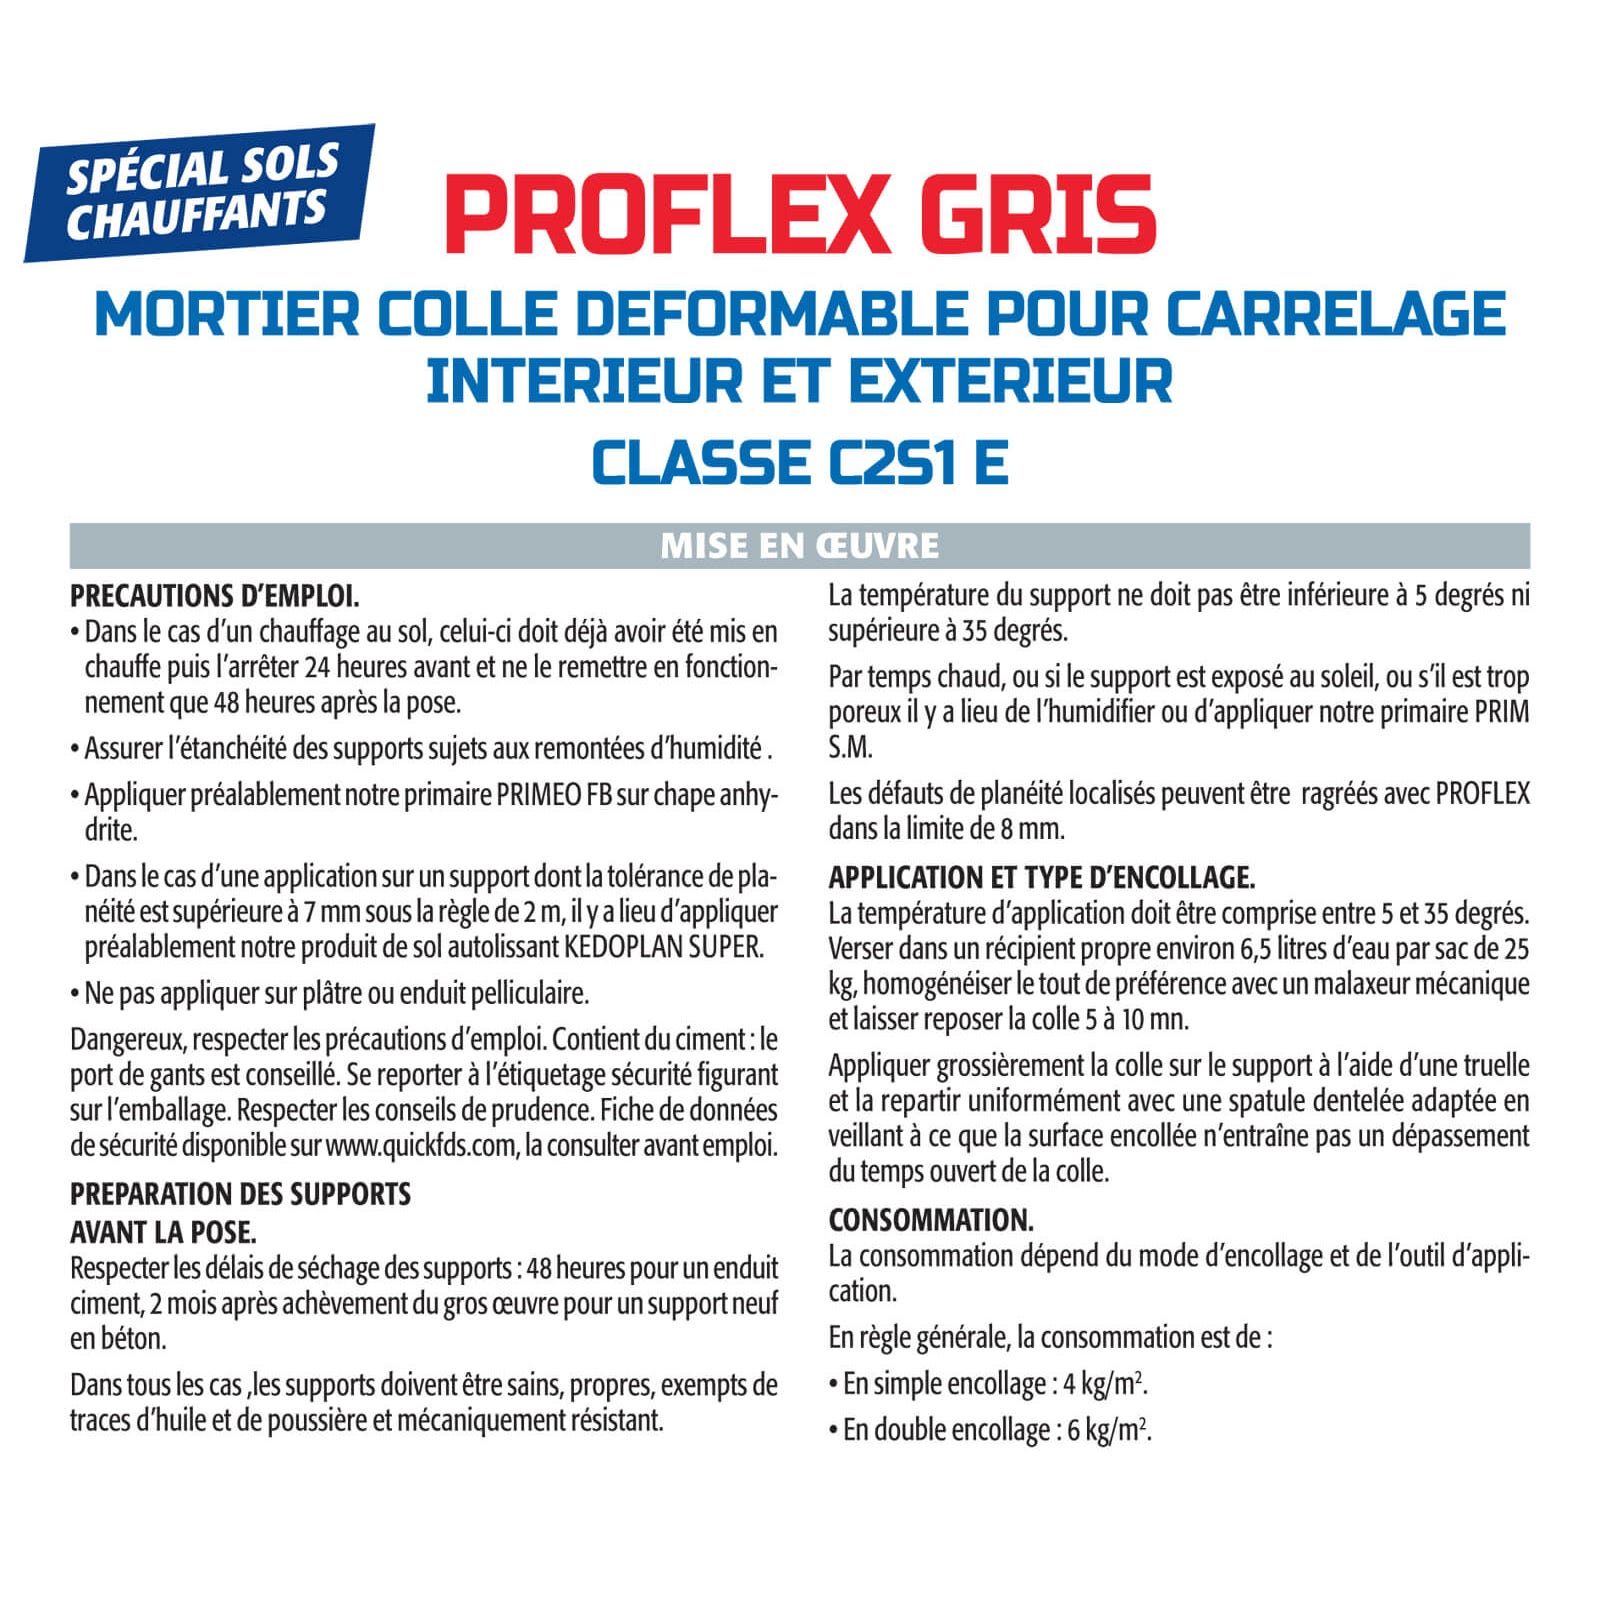 Mortier Colle Déformable pour Carrelage Proflex Gris Semin, Intérieur/Extérieur, sac de 25 kg 3